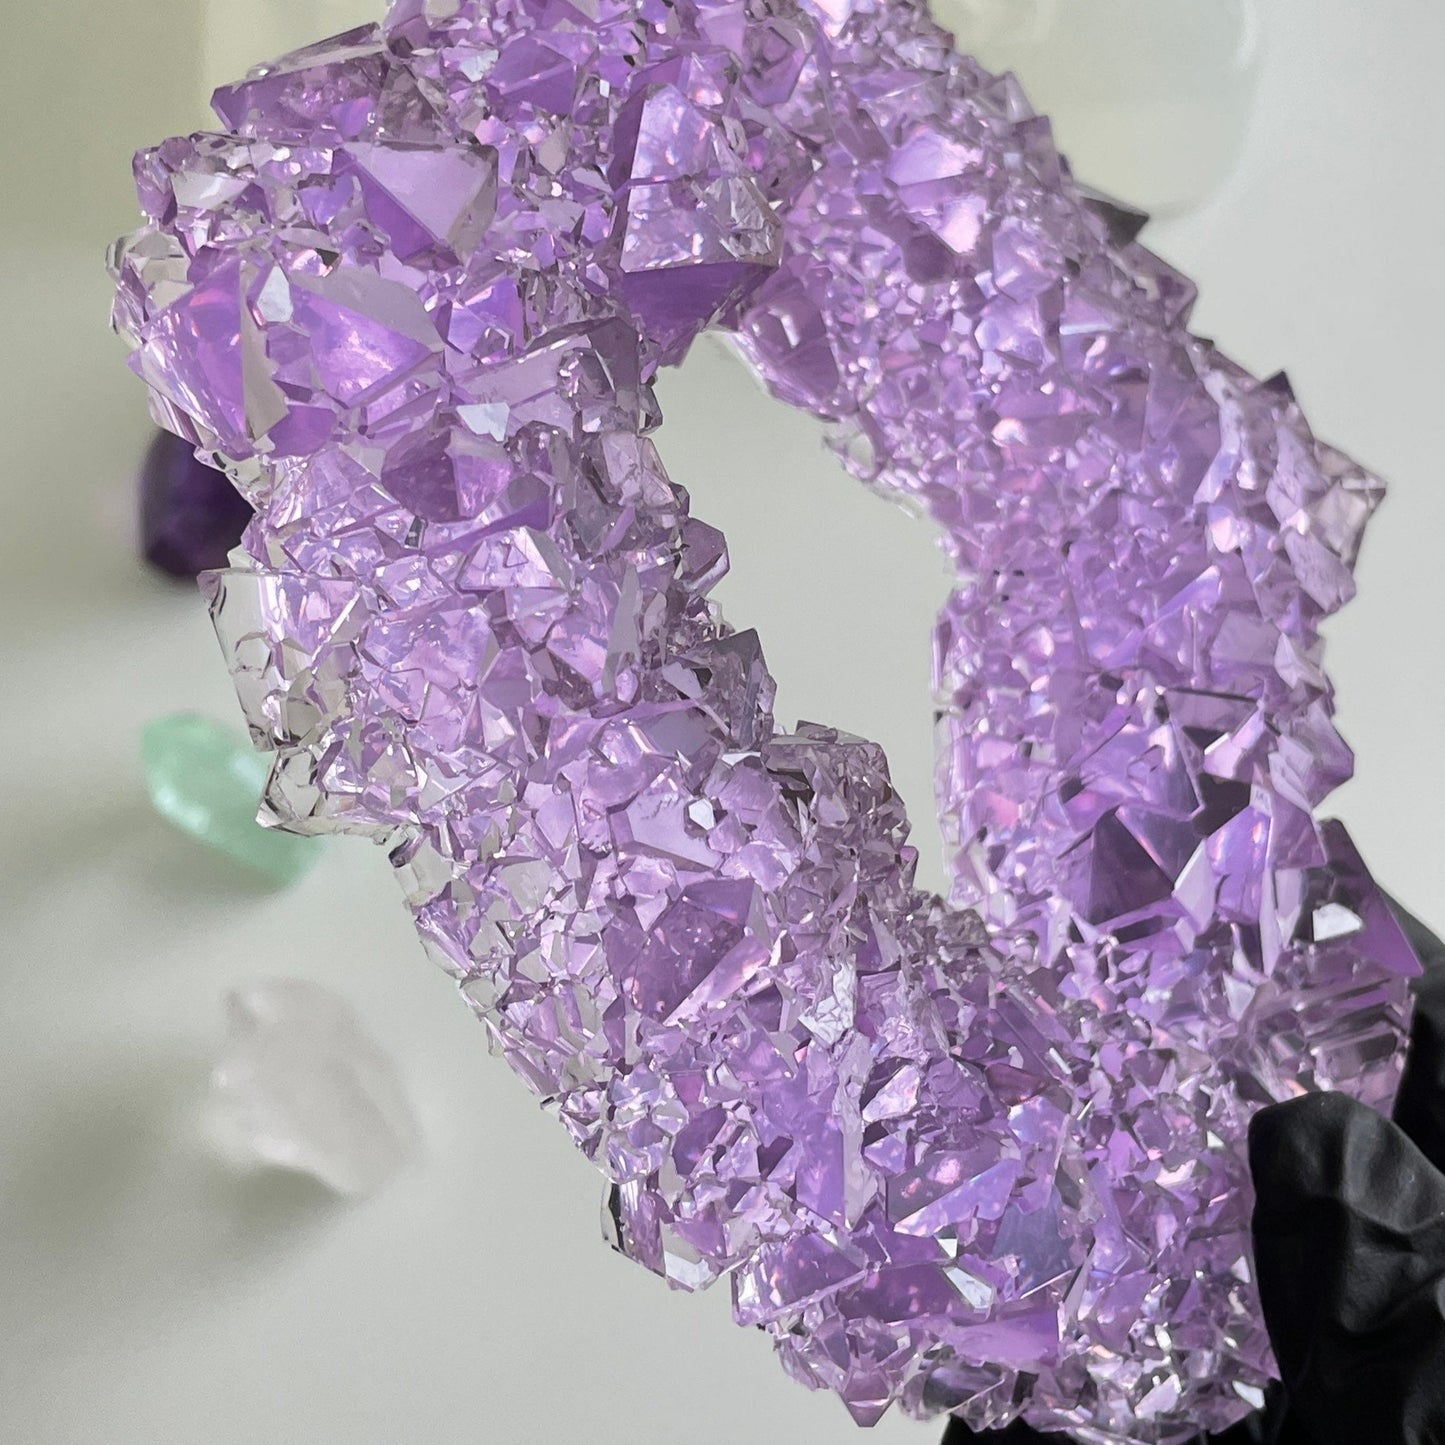 Luxuriöse Kristall-Silikonform: Hohe Qualität und große Größe